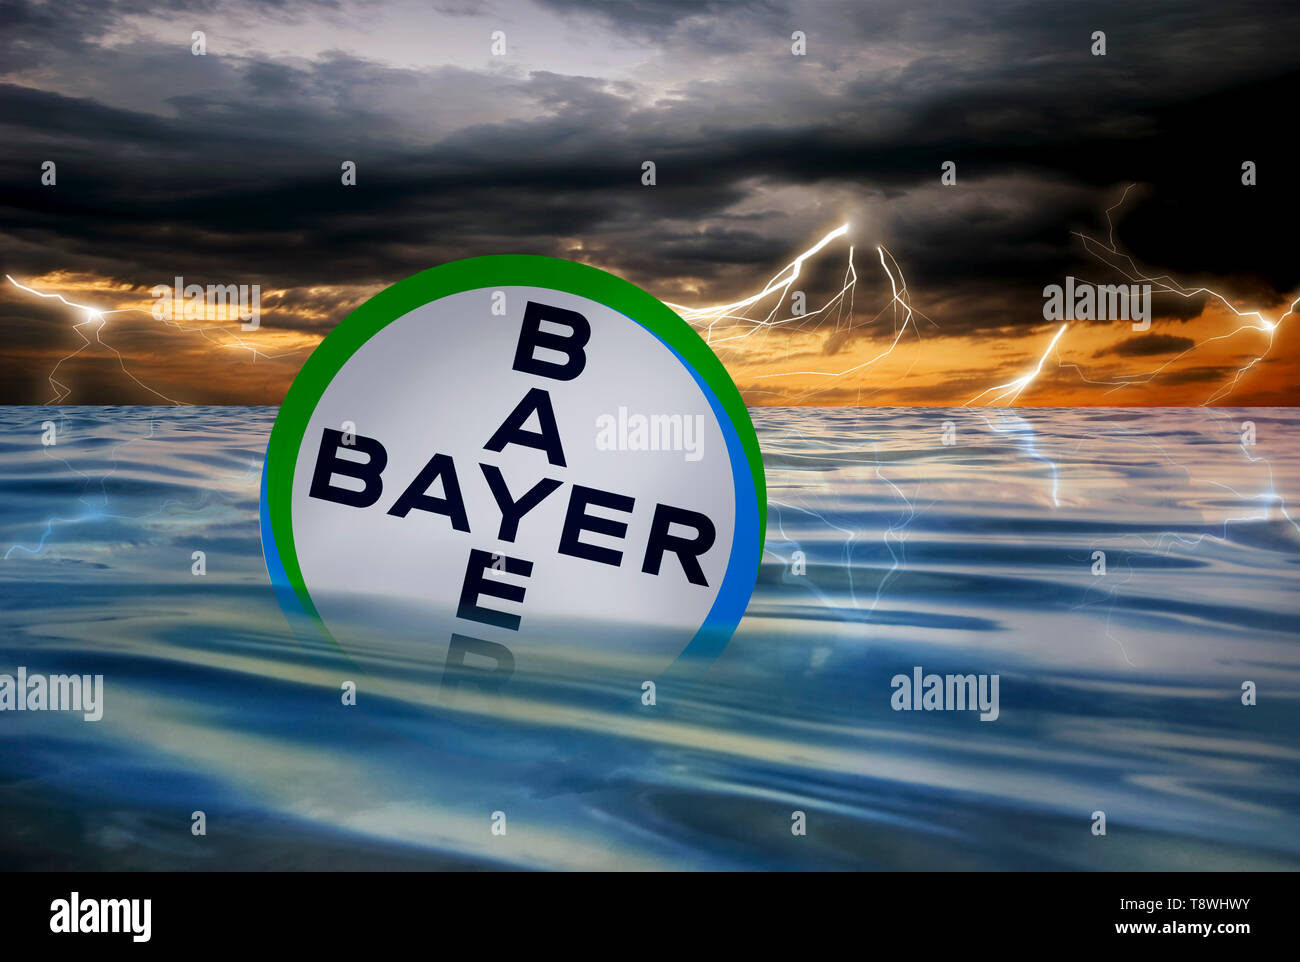 Crisis de la empresa alemana Bayer AG tras la adquisición del productor de glifosato Monsanto Foto de stock